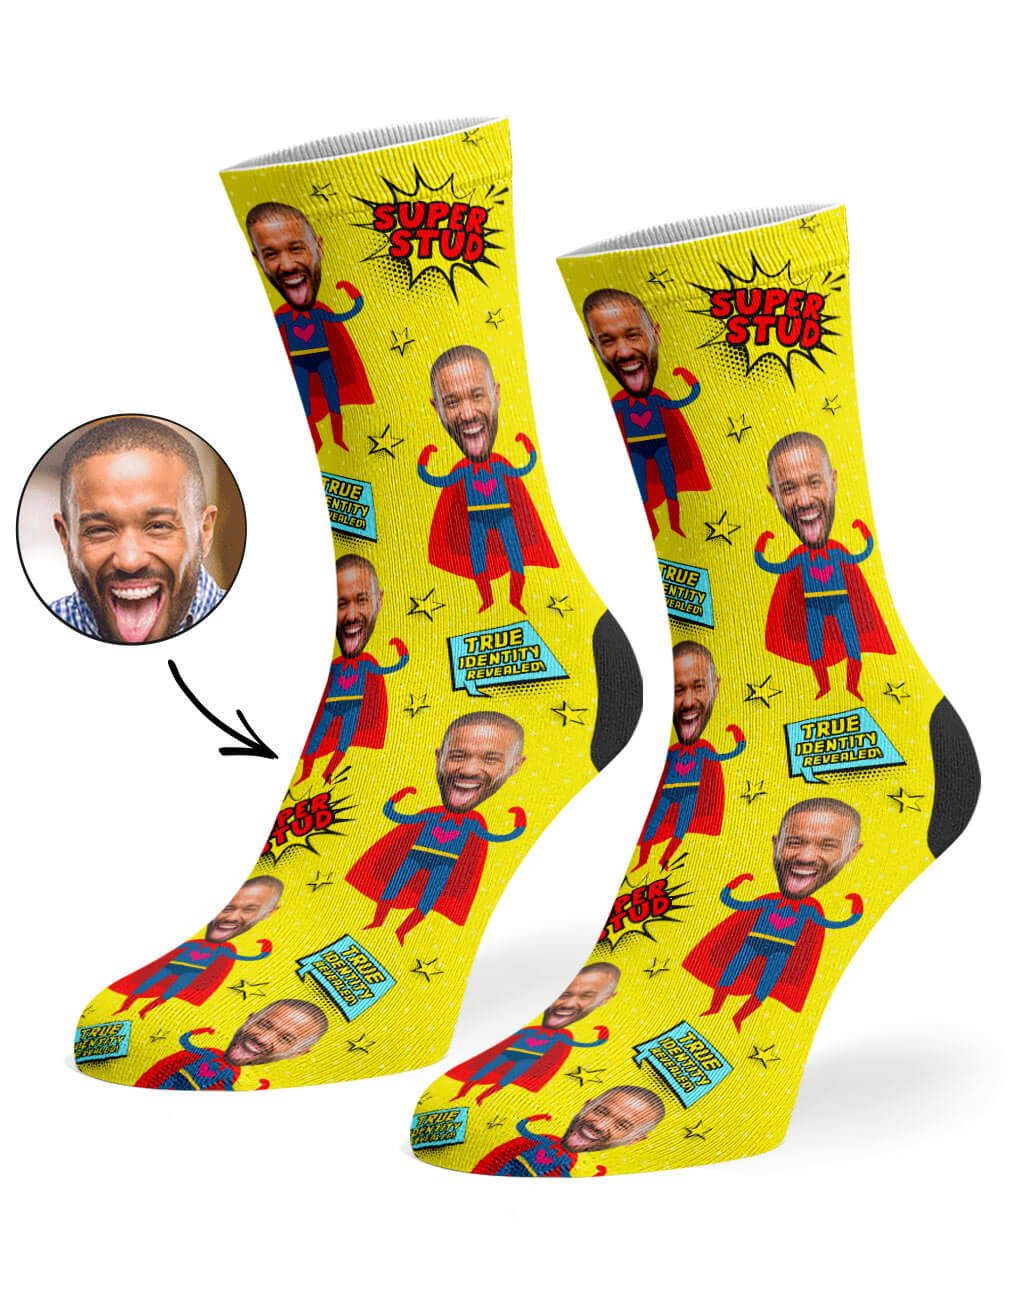 Super Stud Custom Socks